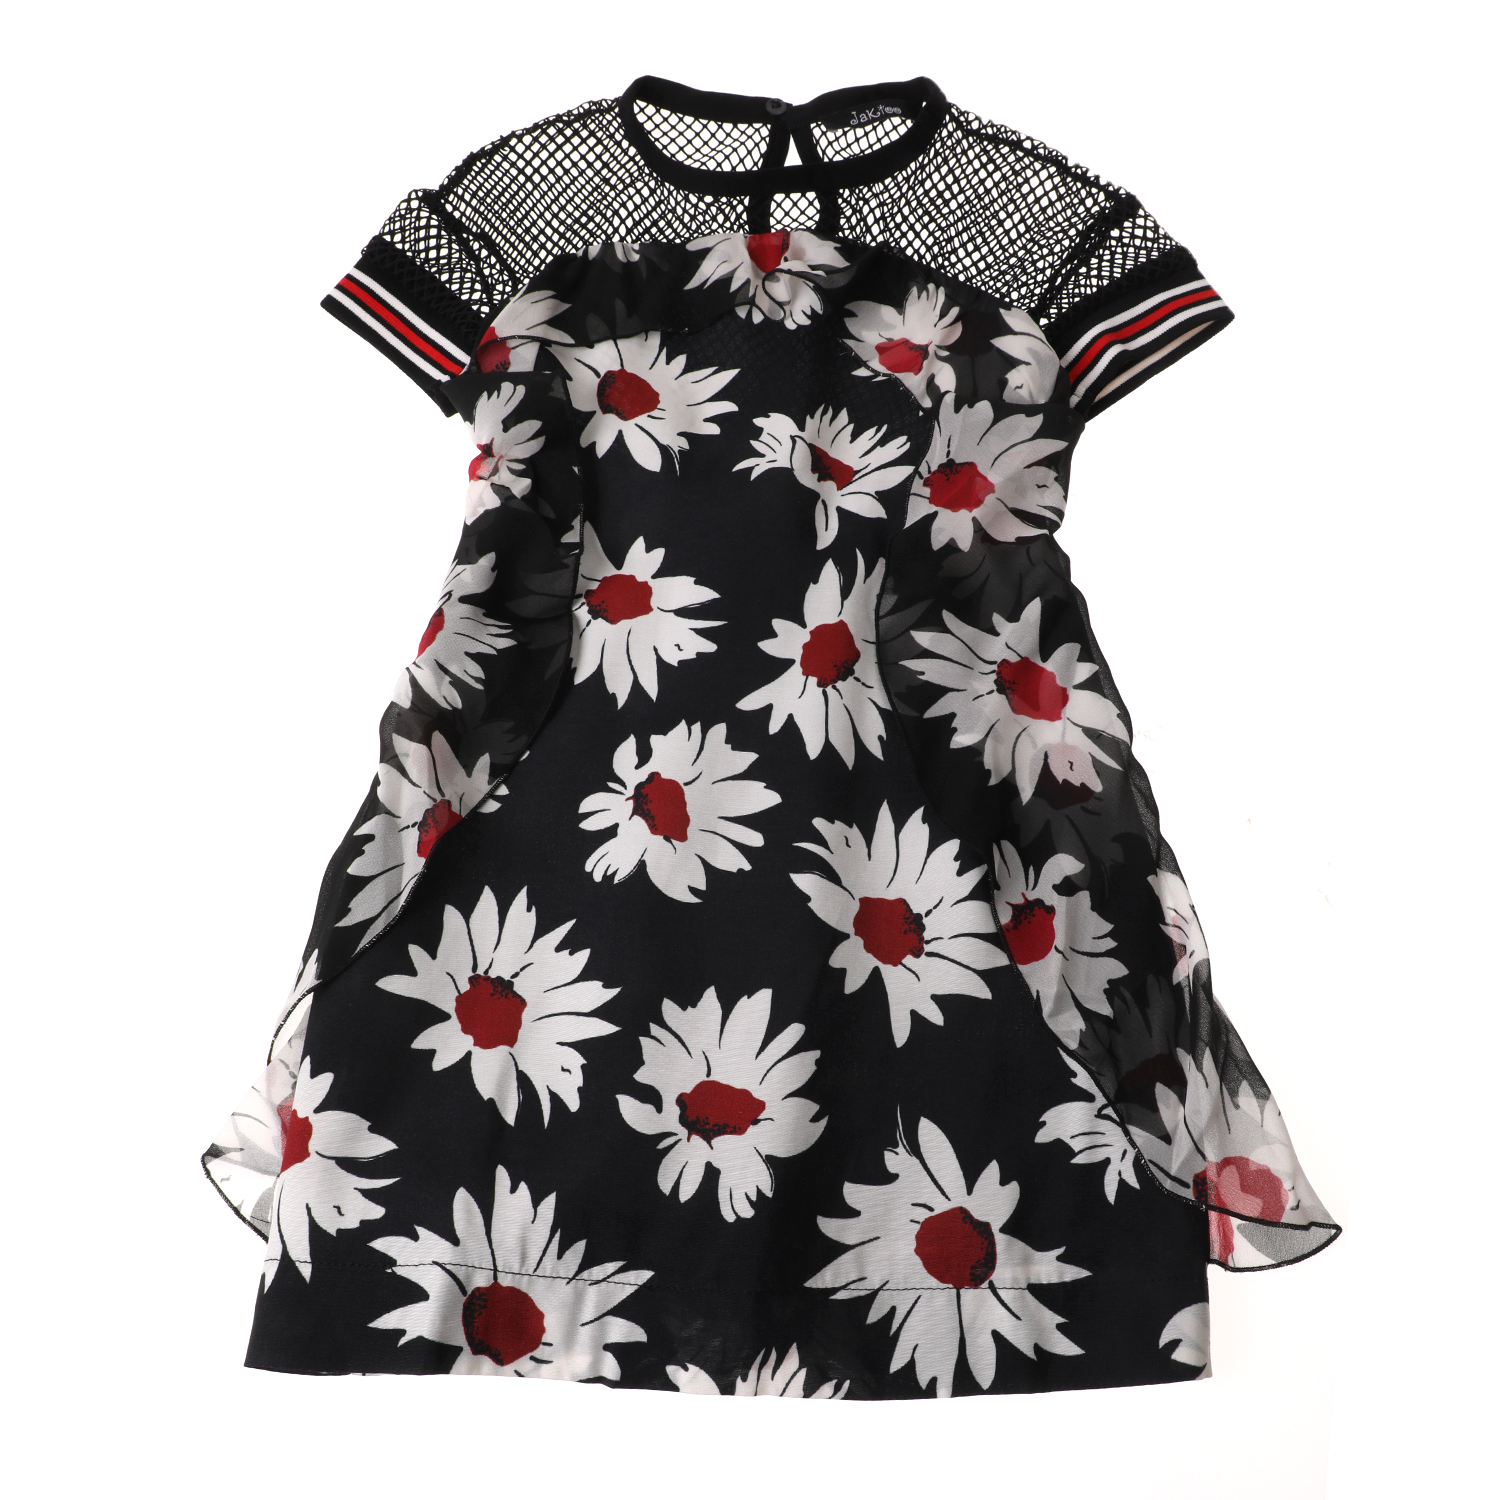 Παιδικά/Girls/Ρούχα/Φορέματα Κοντομάνικα-Αμάνικα JAKIOO - Πσιδικό φόρεμα JAKIOO ABITO ST. DAISY PUNK εμπριμέ